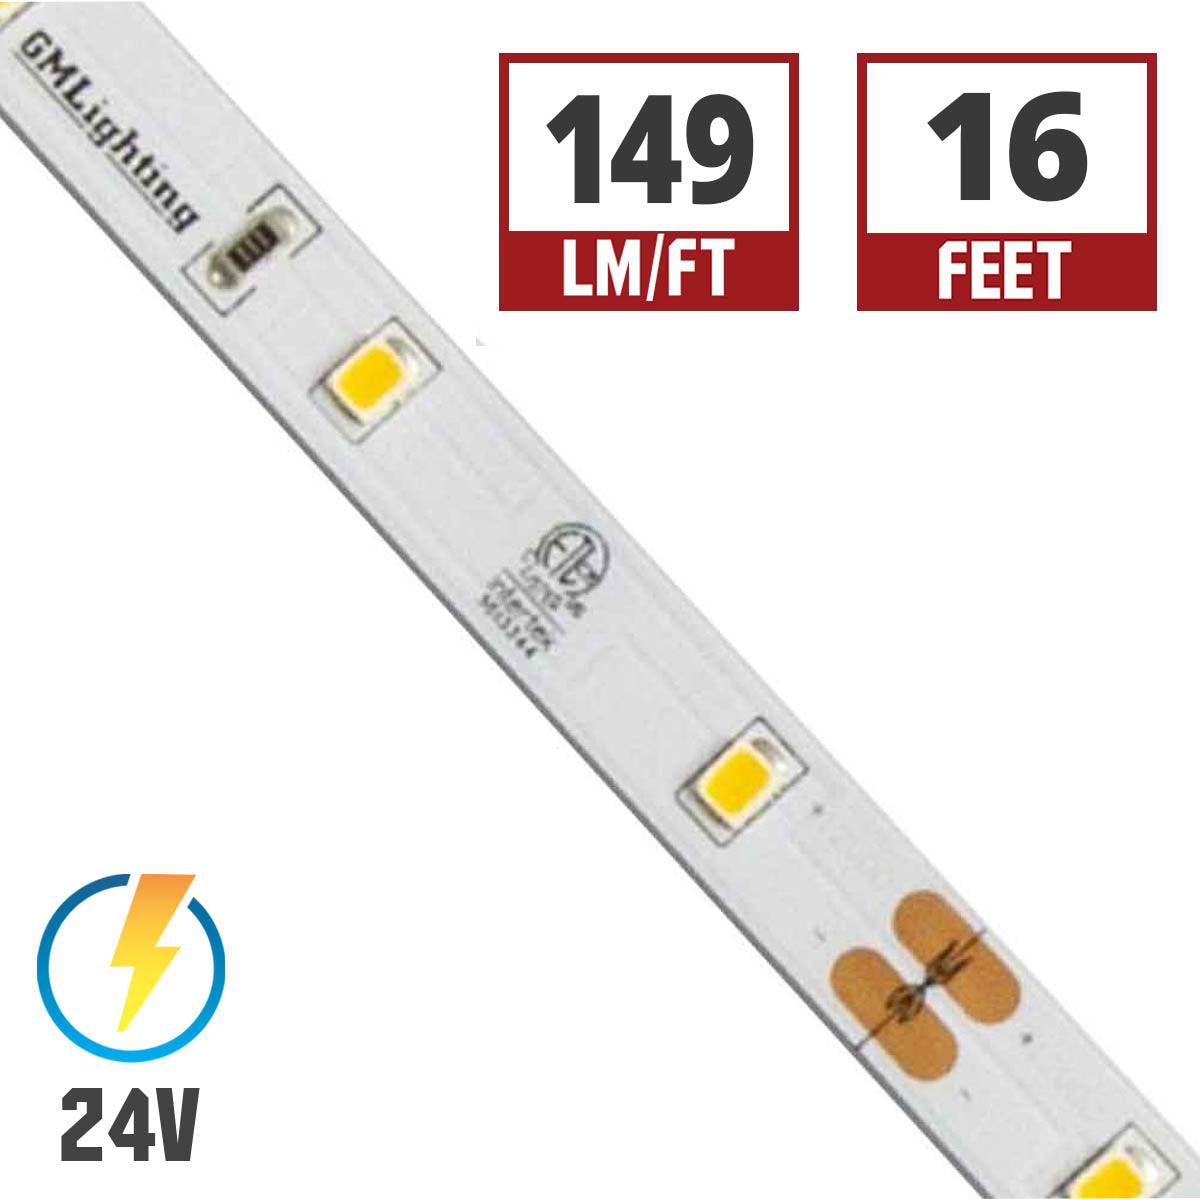 LTR-E Econo LED Strip Light, 1.5W / ft, 134 Lumens per Ft, 24V - Bees Lighting